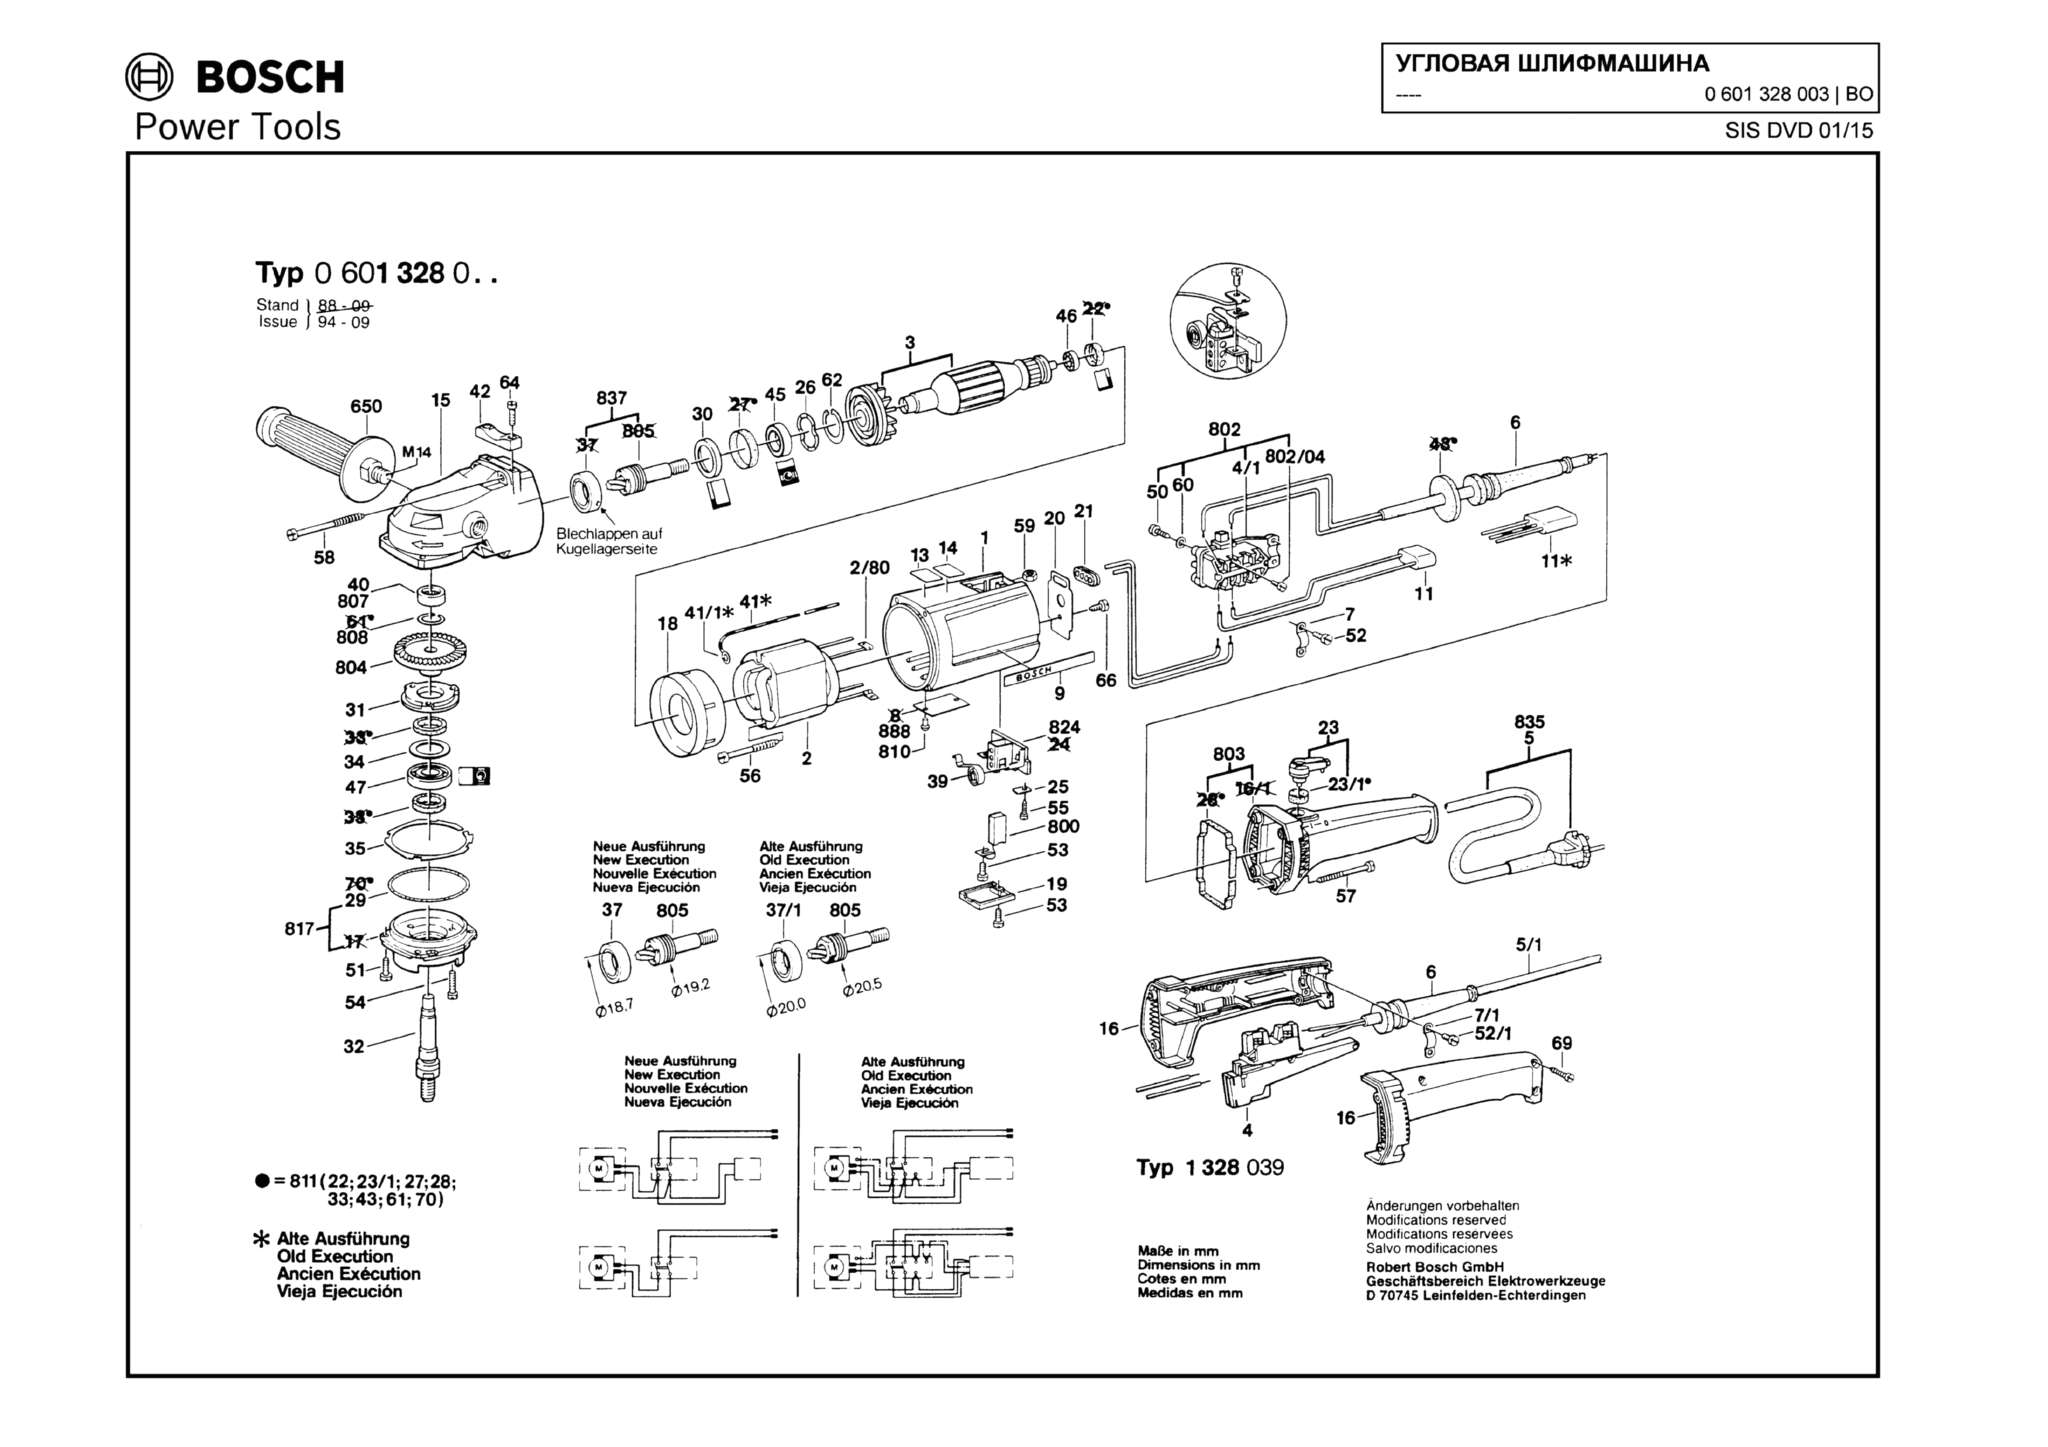 Запчасти, схема и деталировка Bosch (ТИП 0601328003)